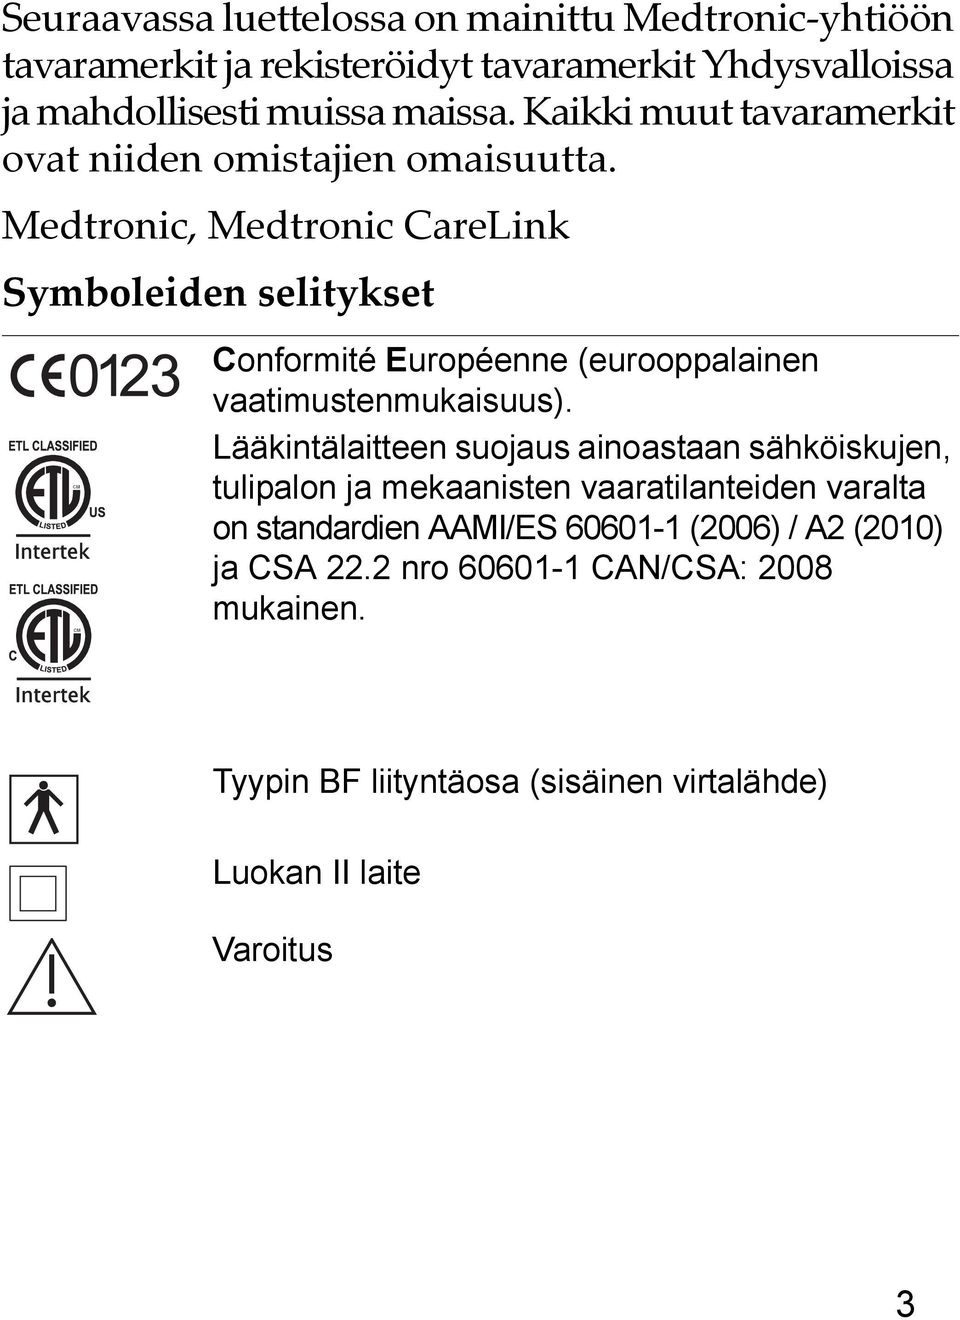 Medtronic, Medtronic CareLink Symboleiden selitykset Conformité Européenne (eurooppalainen vaatimustenmukaisuus).